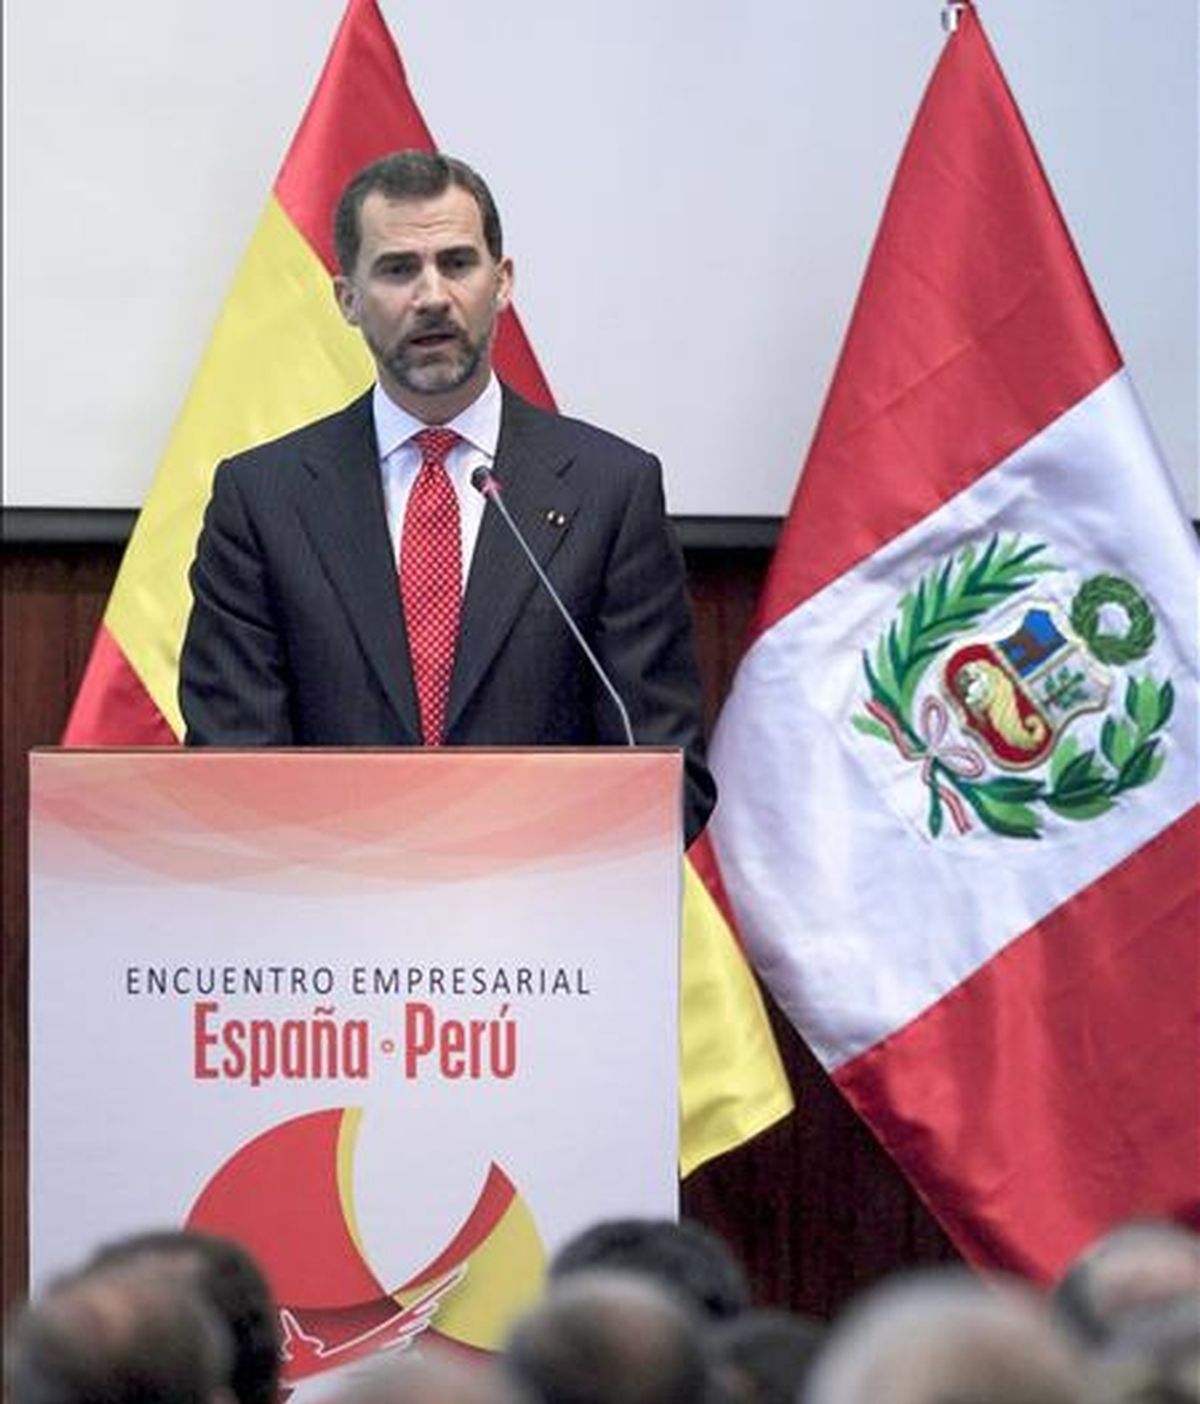 El Príncipe de Asturias, don Felipe de Borbón, durante la clausura del encuentro empresarial entre España y Perú celebrado en Lima, en el que participaron 190 empresas, 40 de ellas desplazadas expresamente desde España para esta reunión. EFE